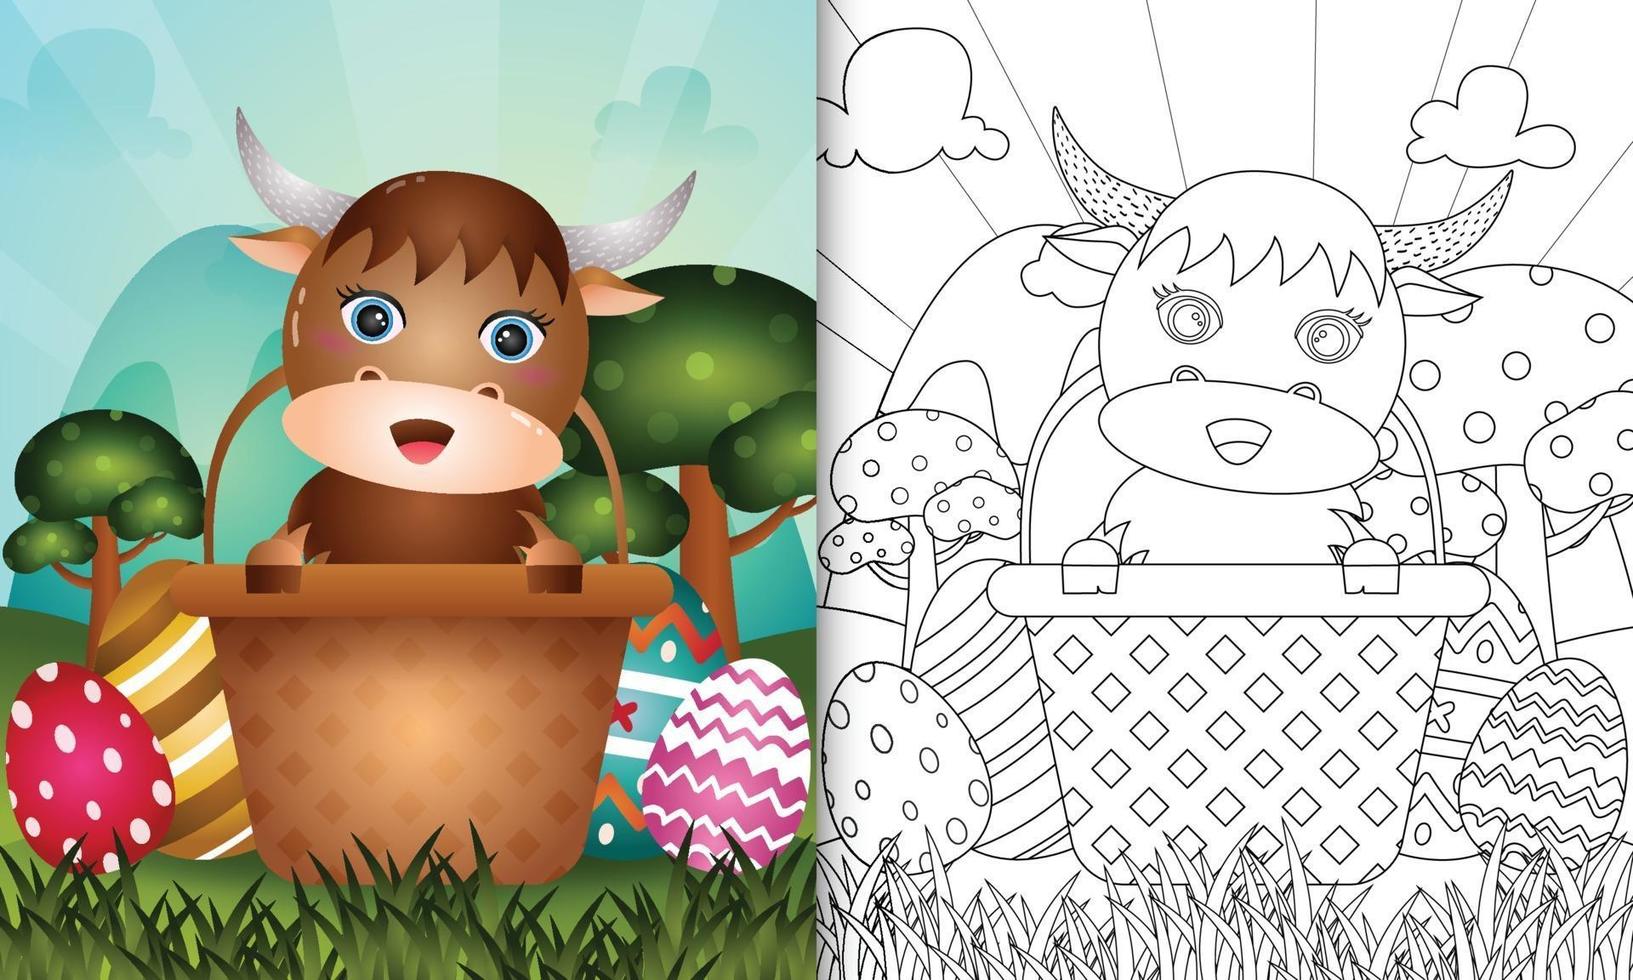 livro de colorir para crianças com tema feliz dia de páscoa com ilustração de um búfalo fofo no ovo balde vetor